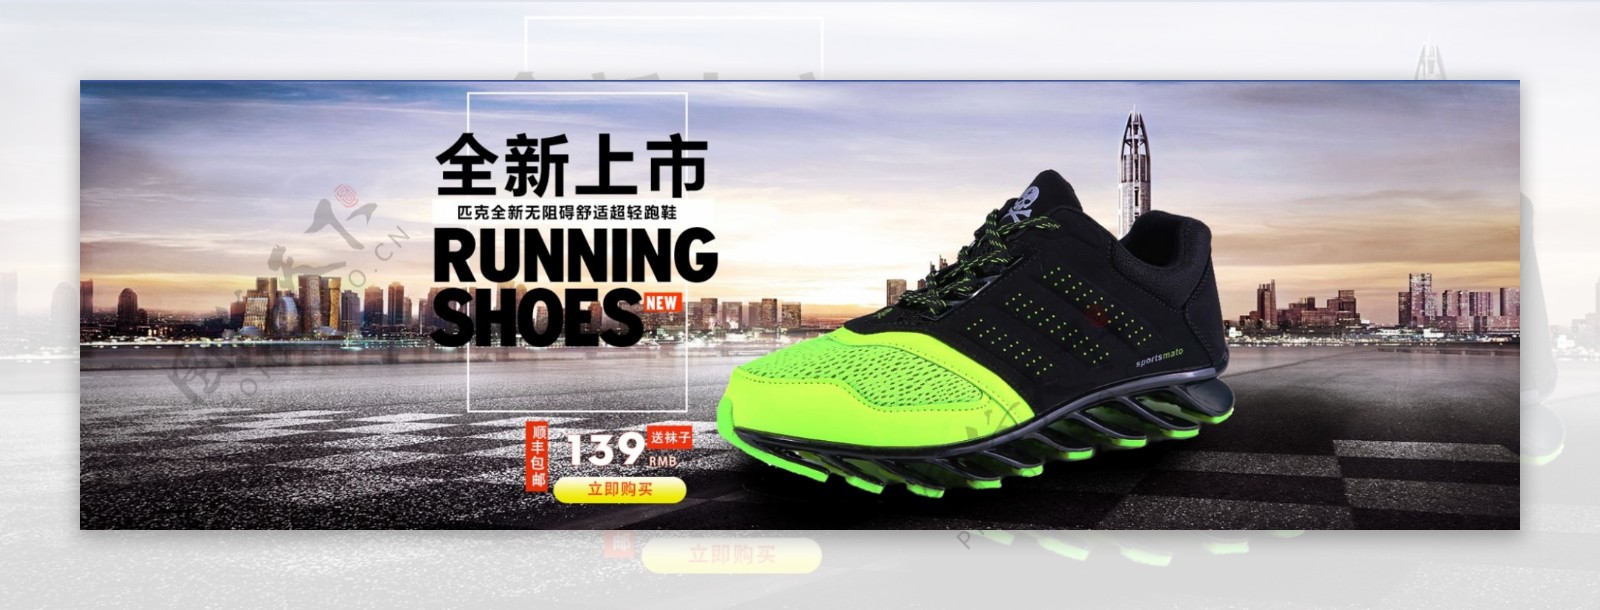 淘宝男士运动鞋新上市海报设计PSD素材